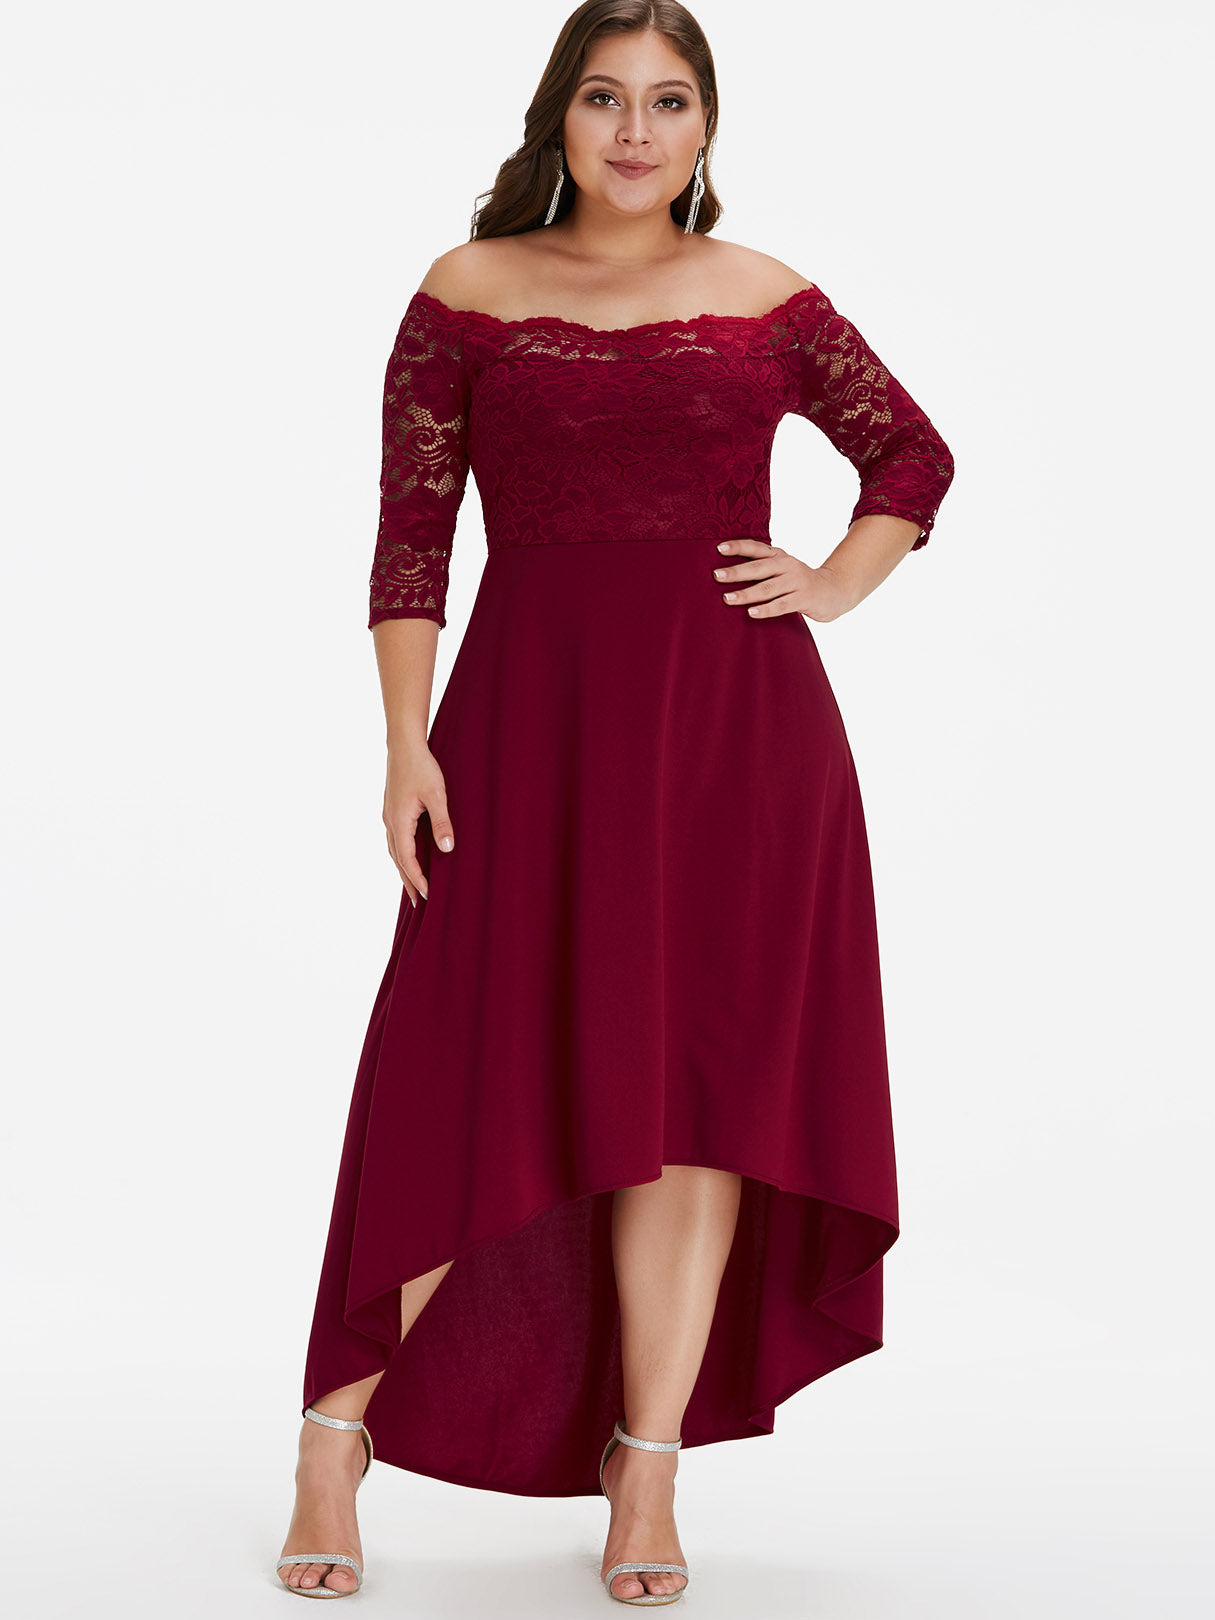 Wholesale Off The Shoulder Plain Lace 3/4 Sleeve High-Low Hem Burgundy Plus Size Dress